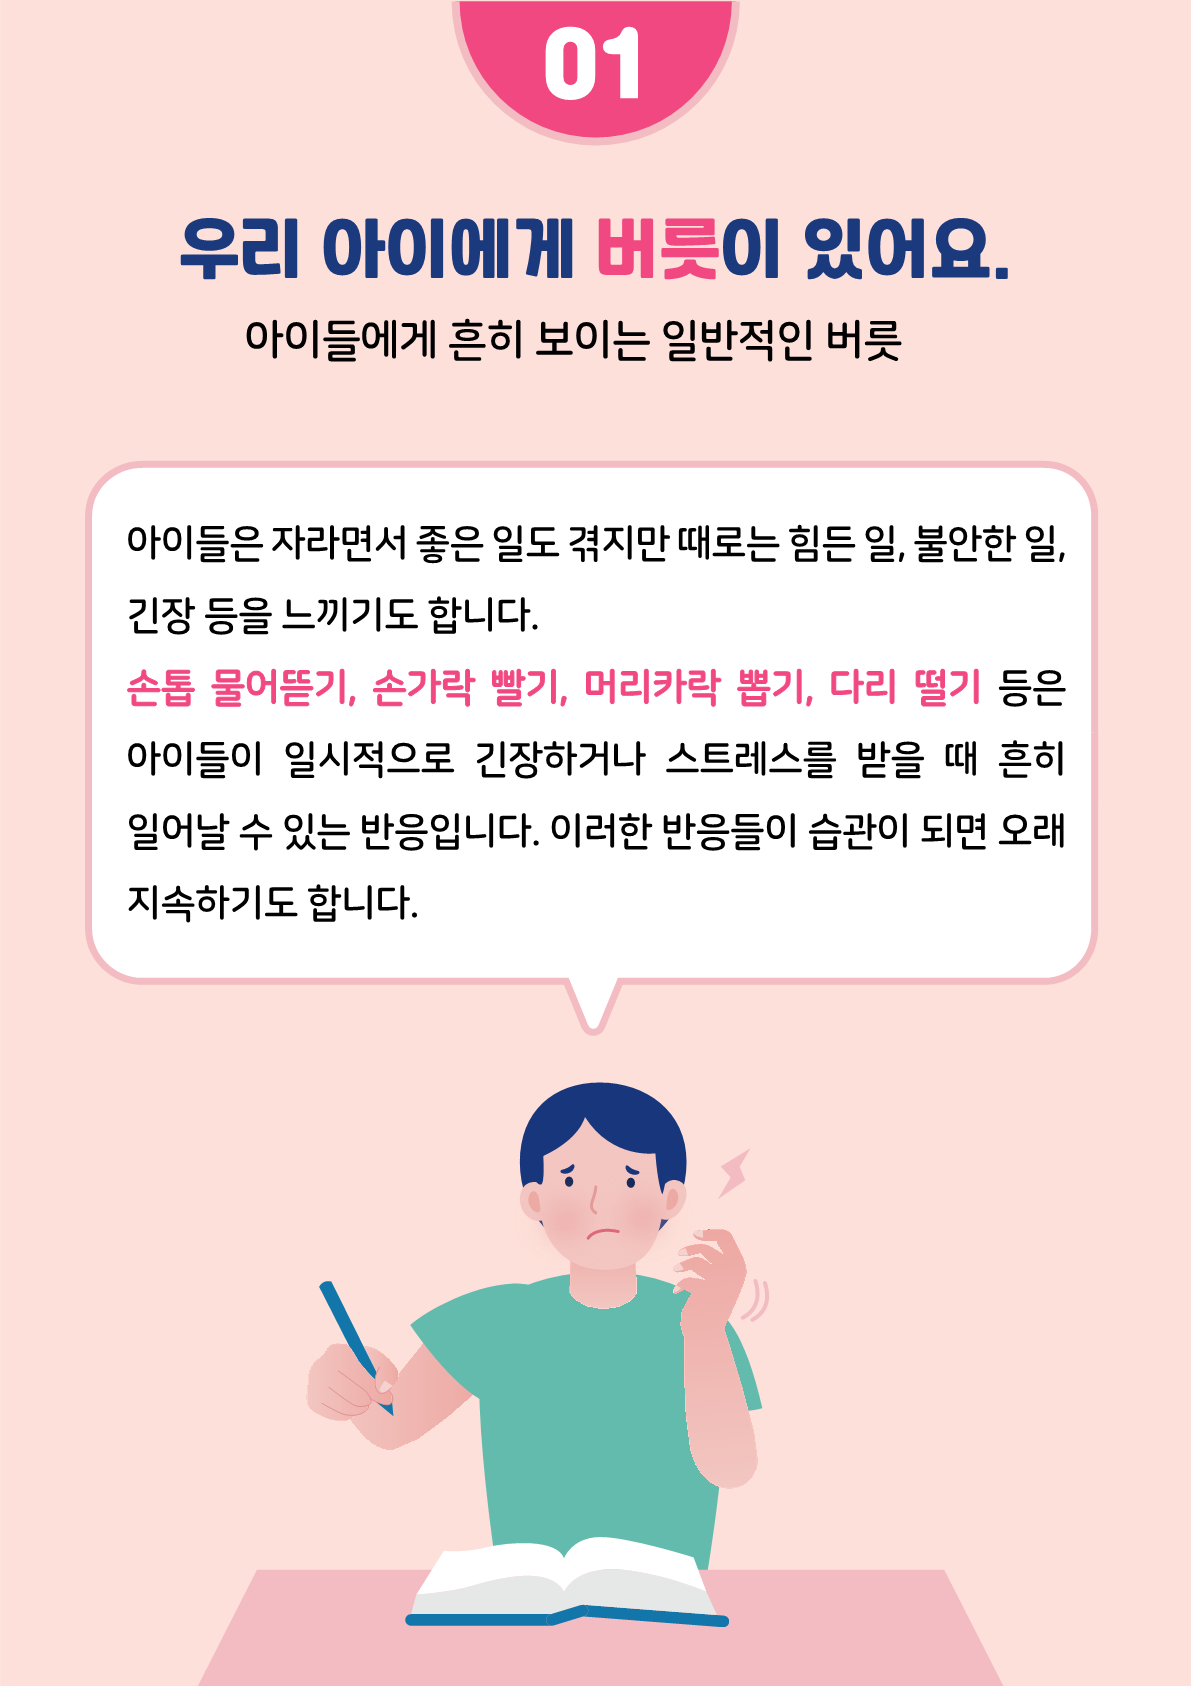 [붙임2]카드뉴스 제2021-5_틱장애(초등학부모용)_3.png